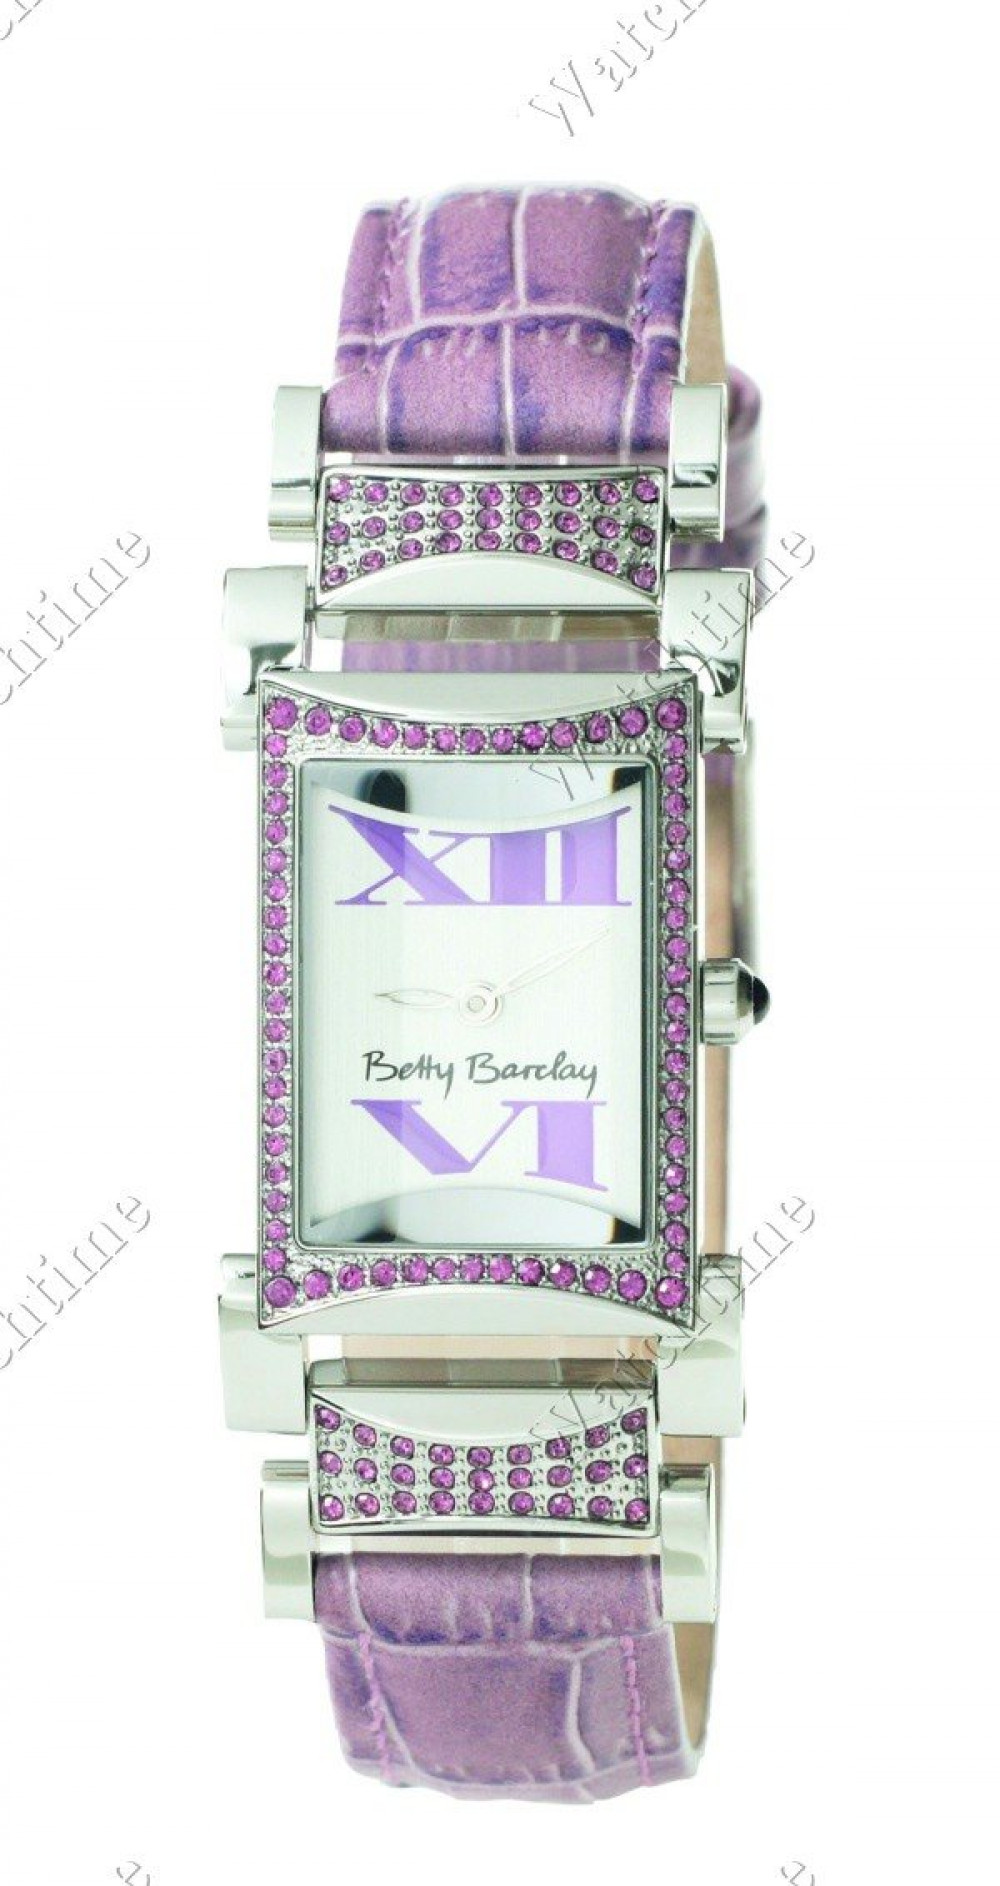 Zegarek firmy Betty Barclay, model Only you